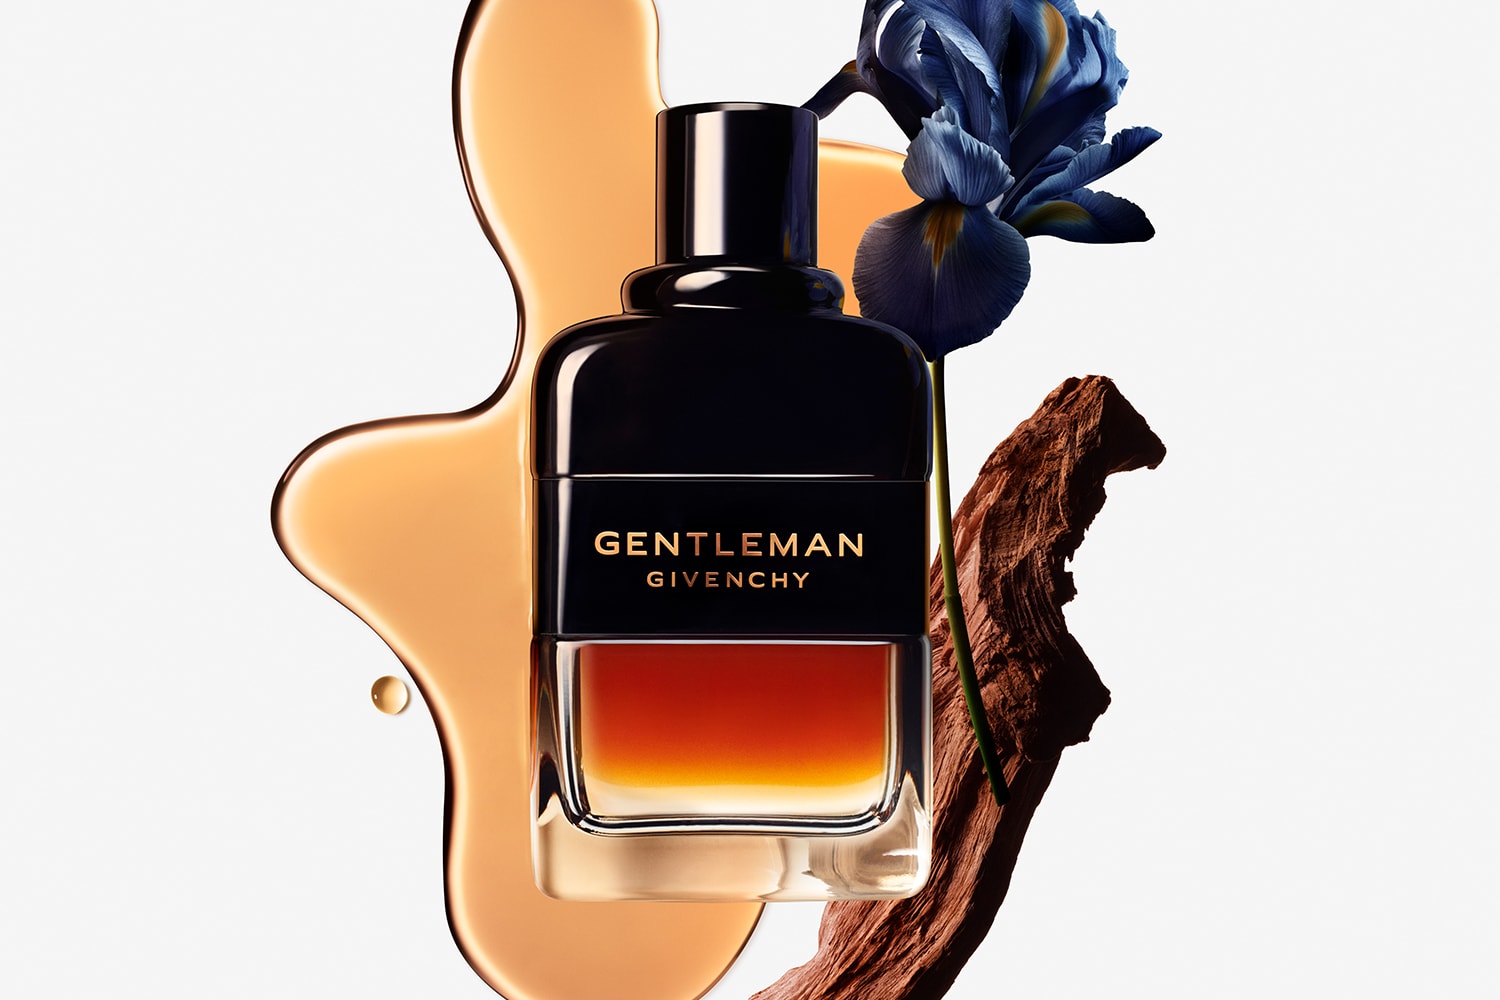 Givenchy Beauty Gentleman Réserve Privée Eau de Parfum Release Info Date Buy Price 